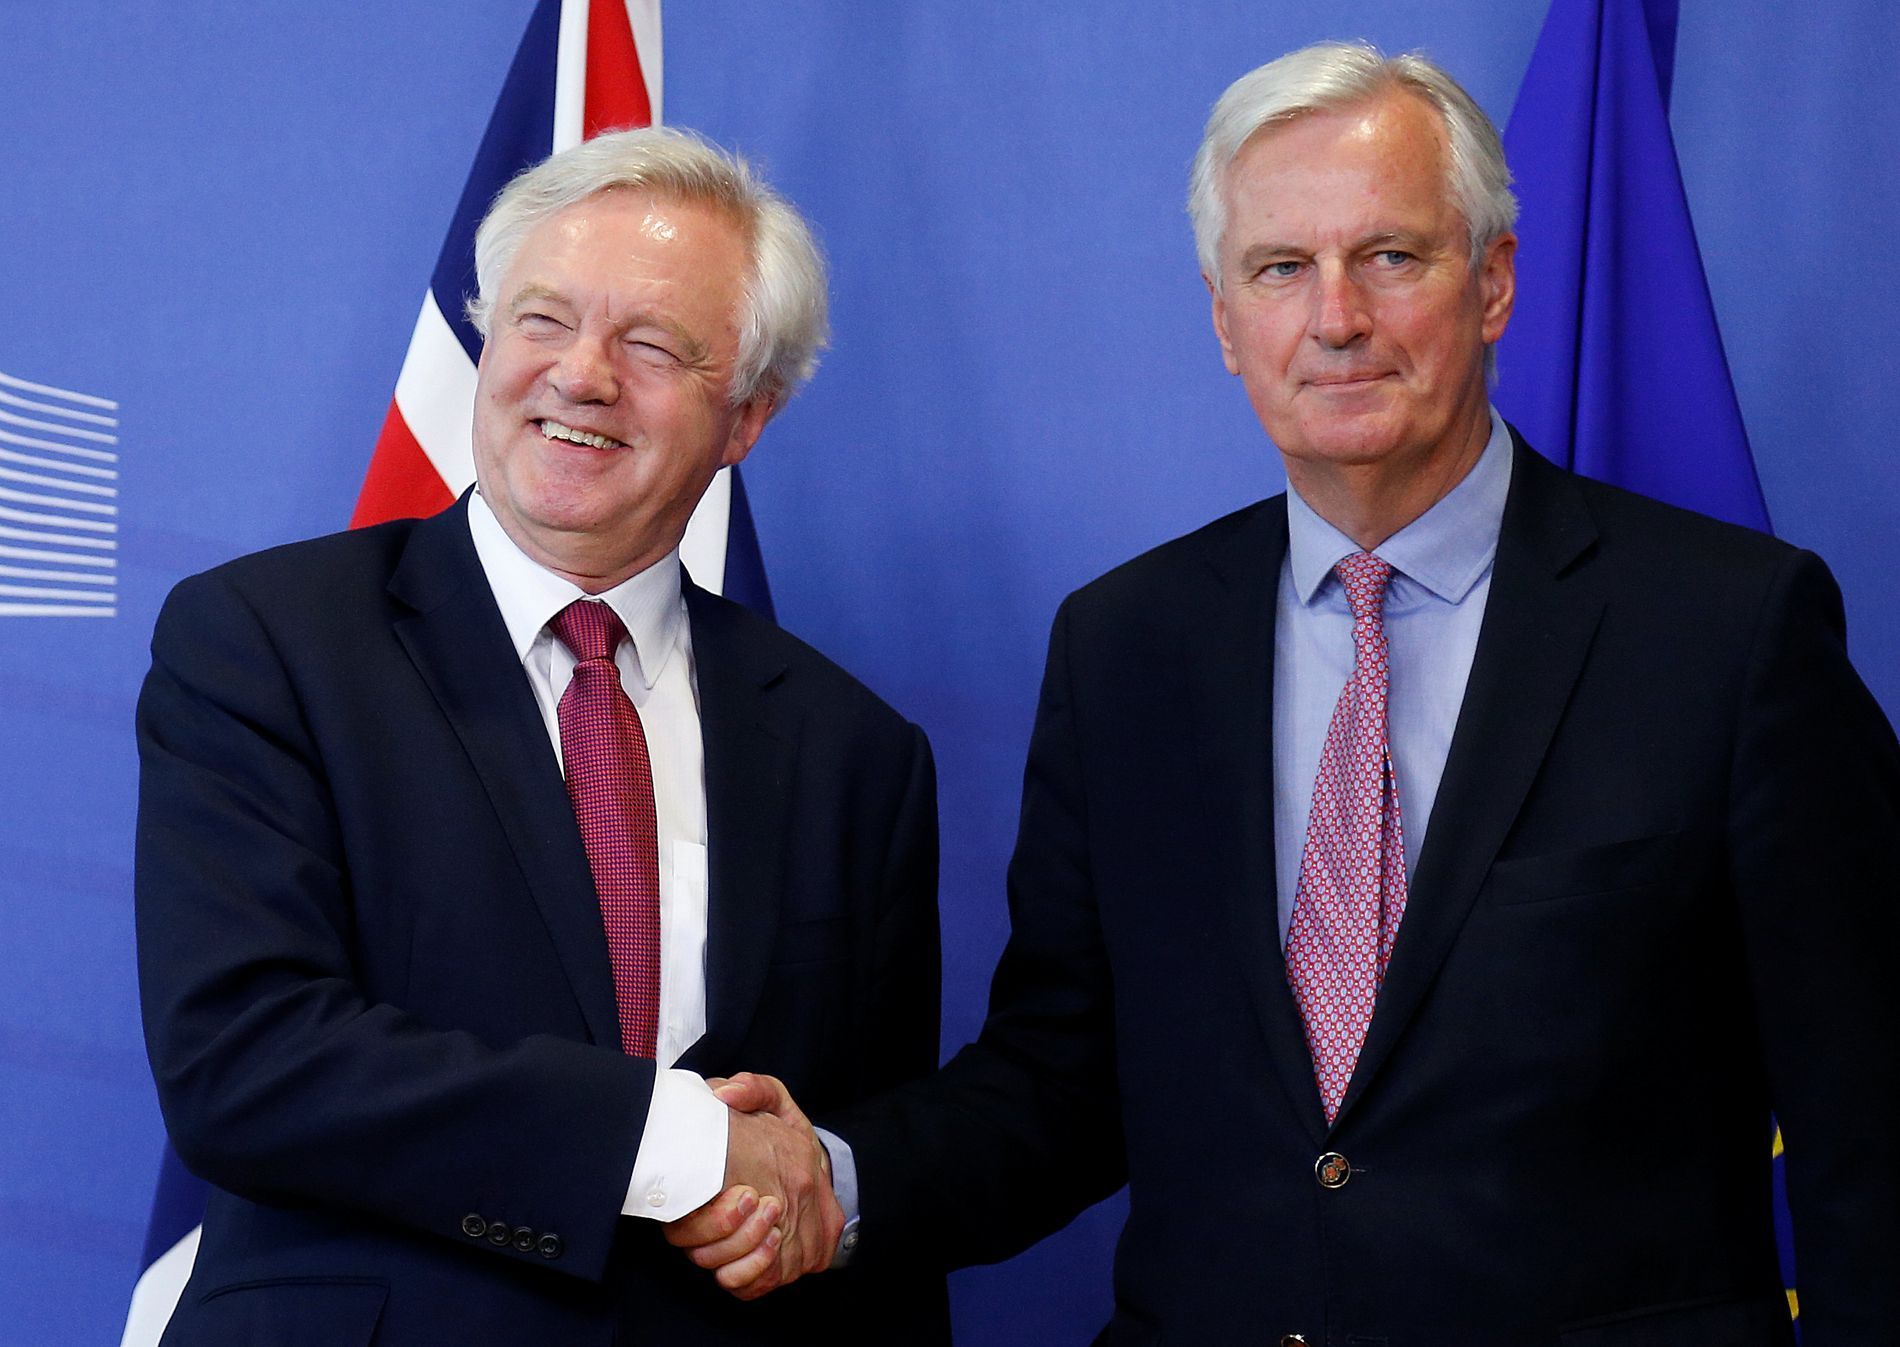 David Davis a Michel Barnier